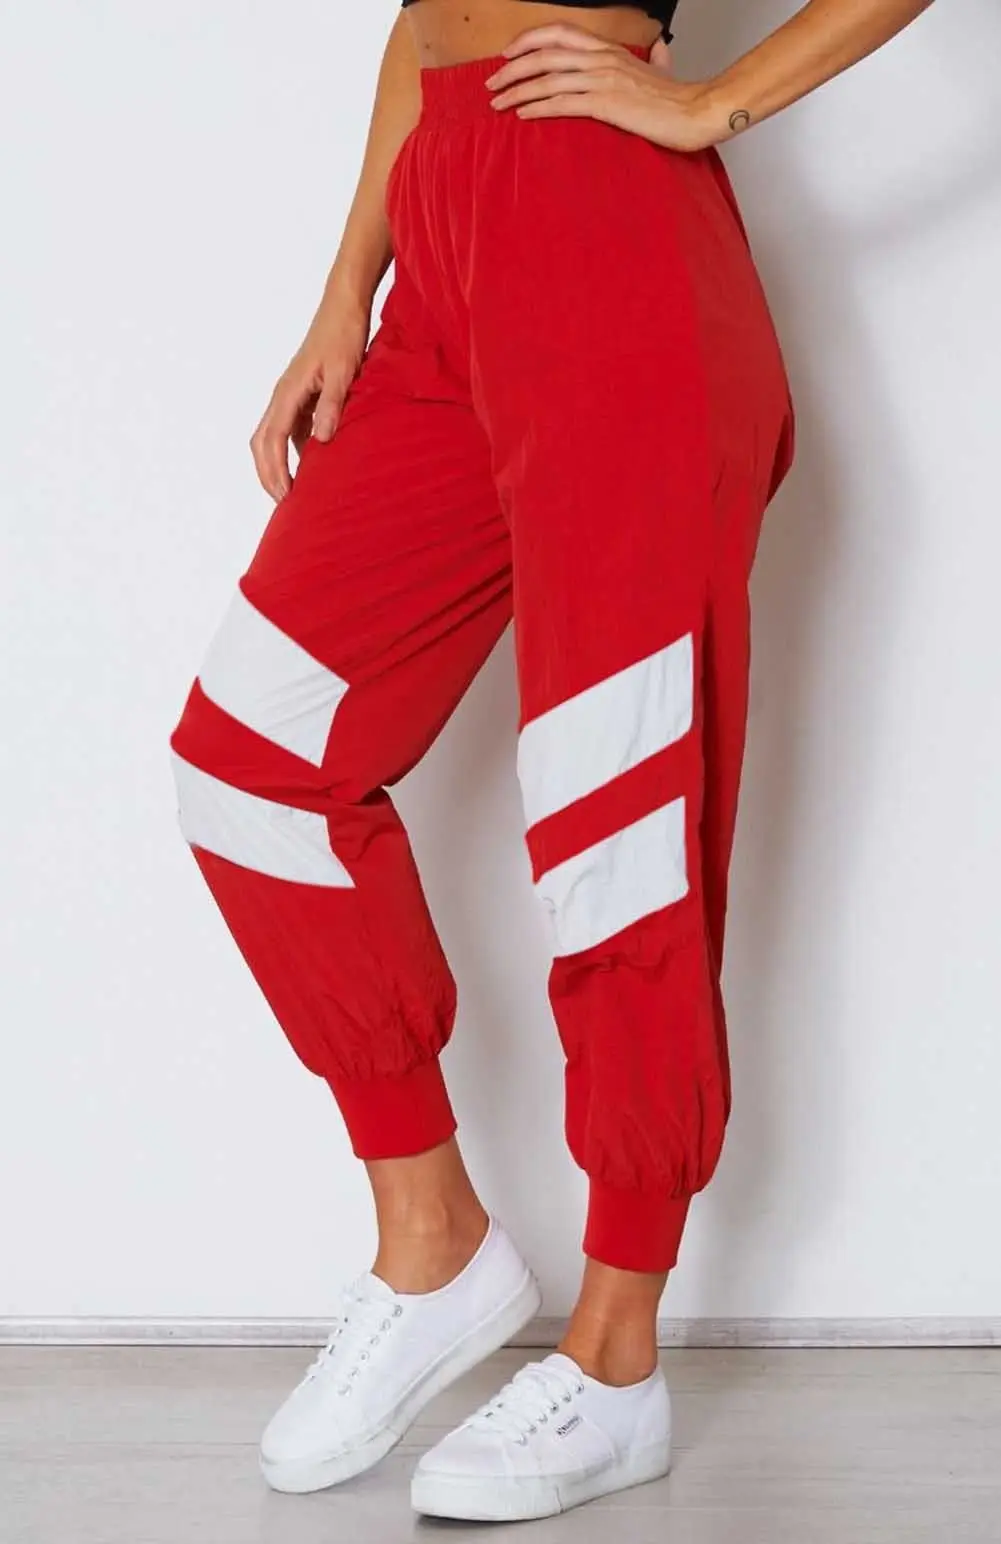 Женские повседневные шаровары, тренировочные шорты, обтягивающие Простые Спортивные штаны с высокой талией - Цвет: Красный